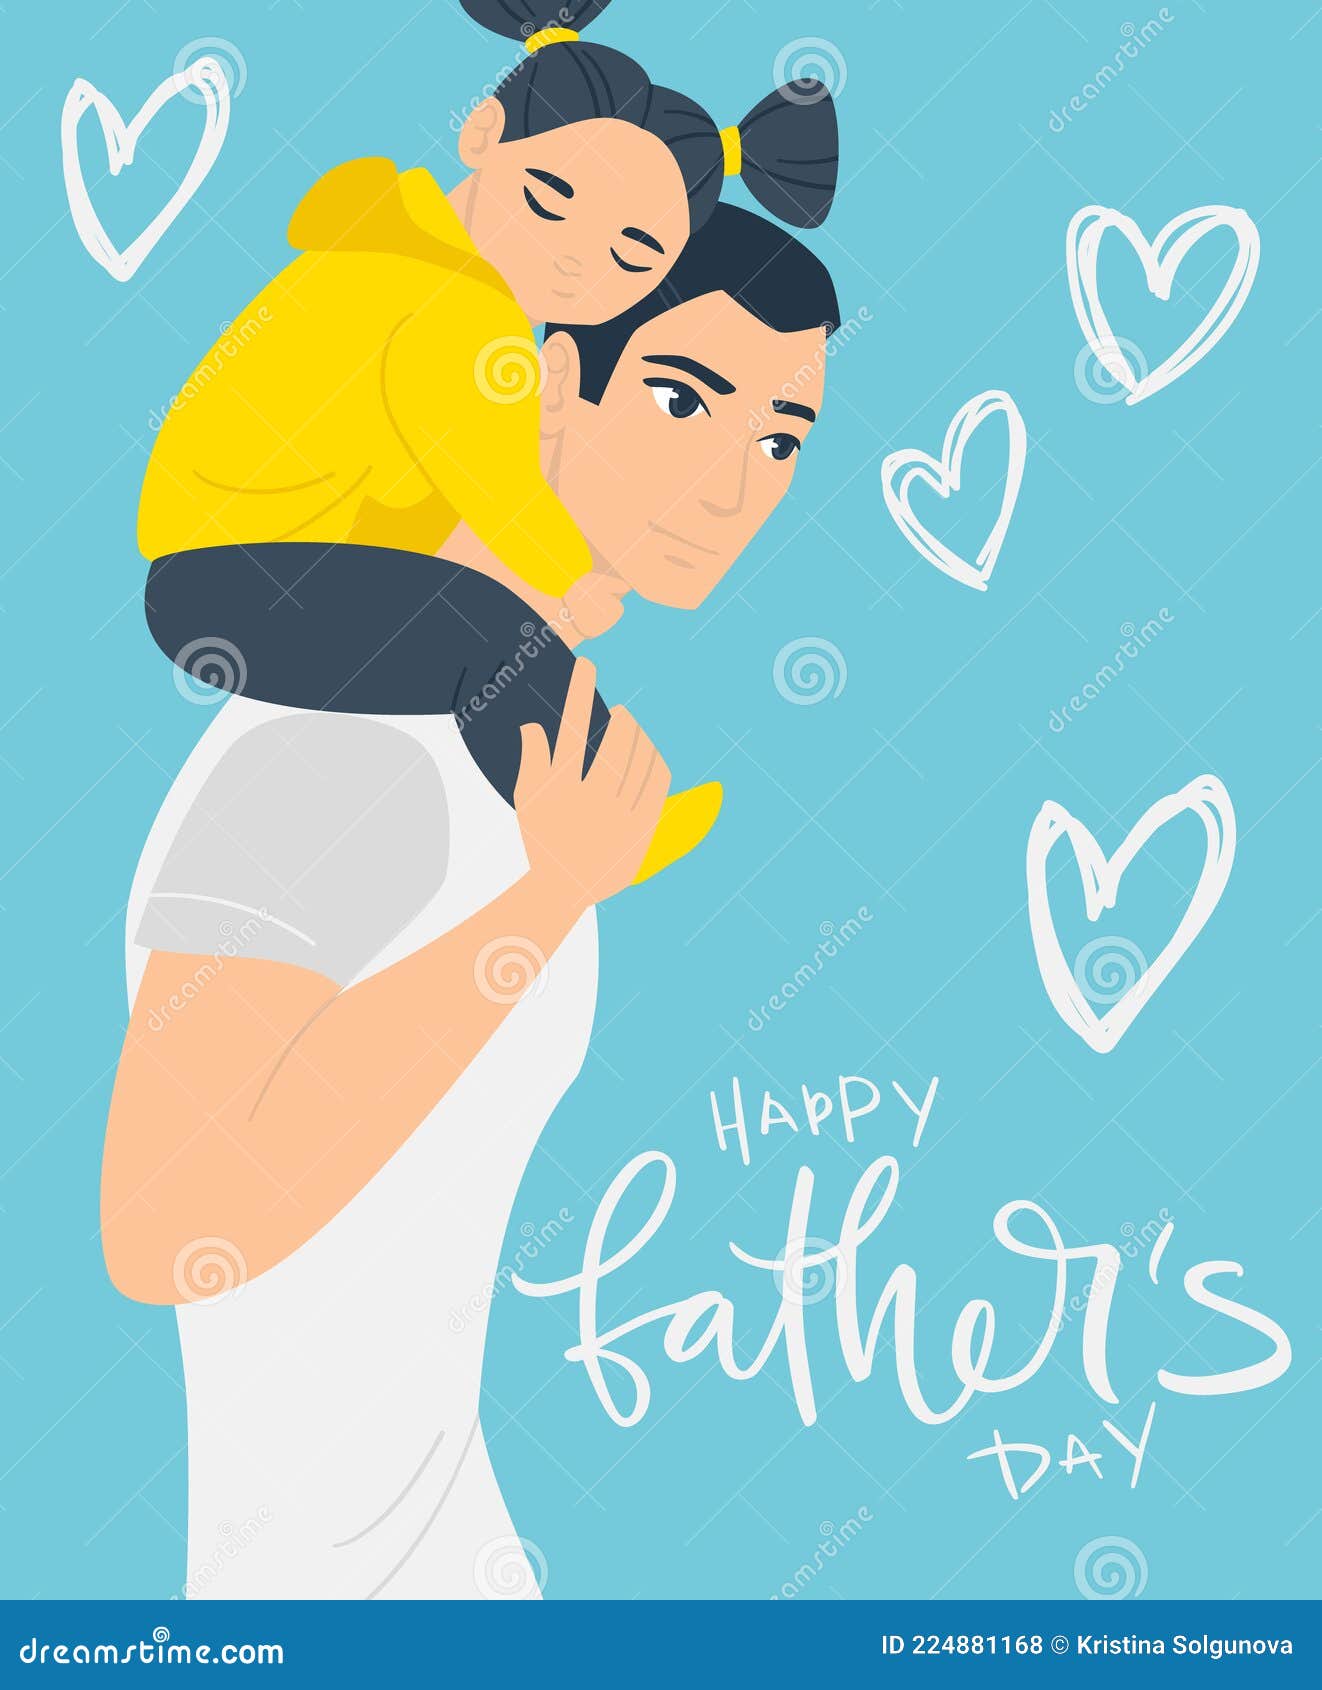 Feliz Día De Los Padres! Ilustración De Dibujos Animados Con Papá E Hija.  Tarjeta De Felicitación De Afiche De Las Festividades Li Ilustración del  Vector - Ilustración de gente, bandera: 224881168